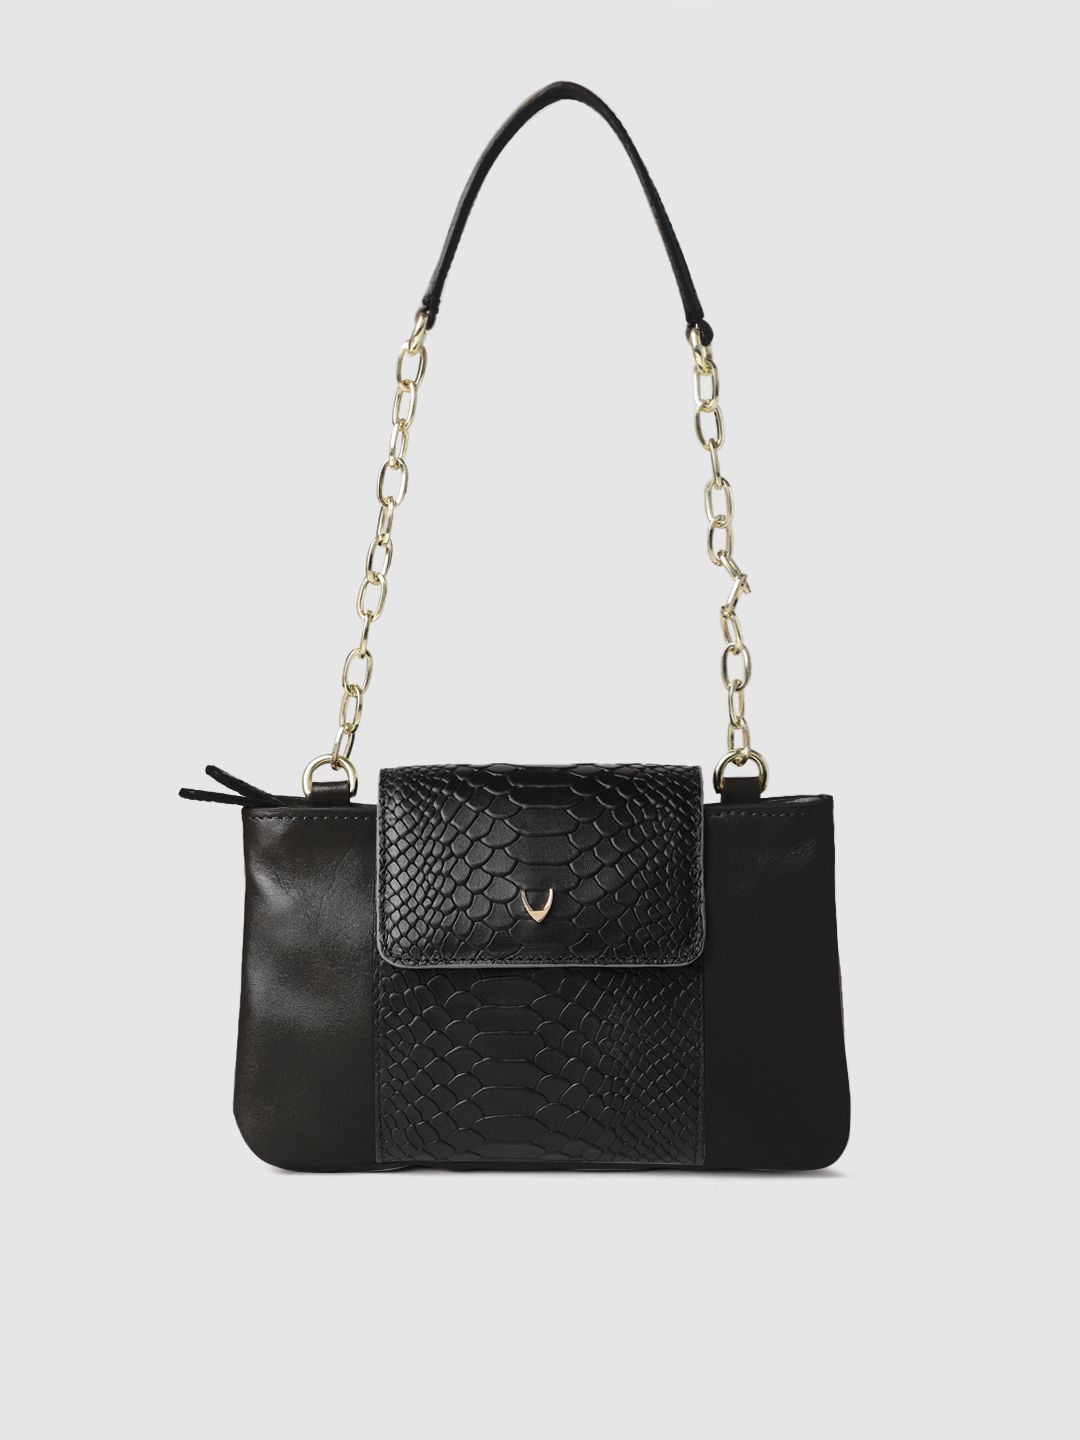 Hidesign Black Textured EE AQUARIUS Leather Shoulder Bag Price in India